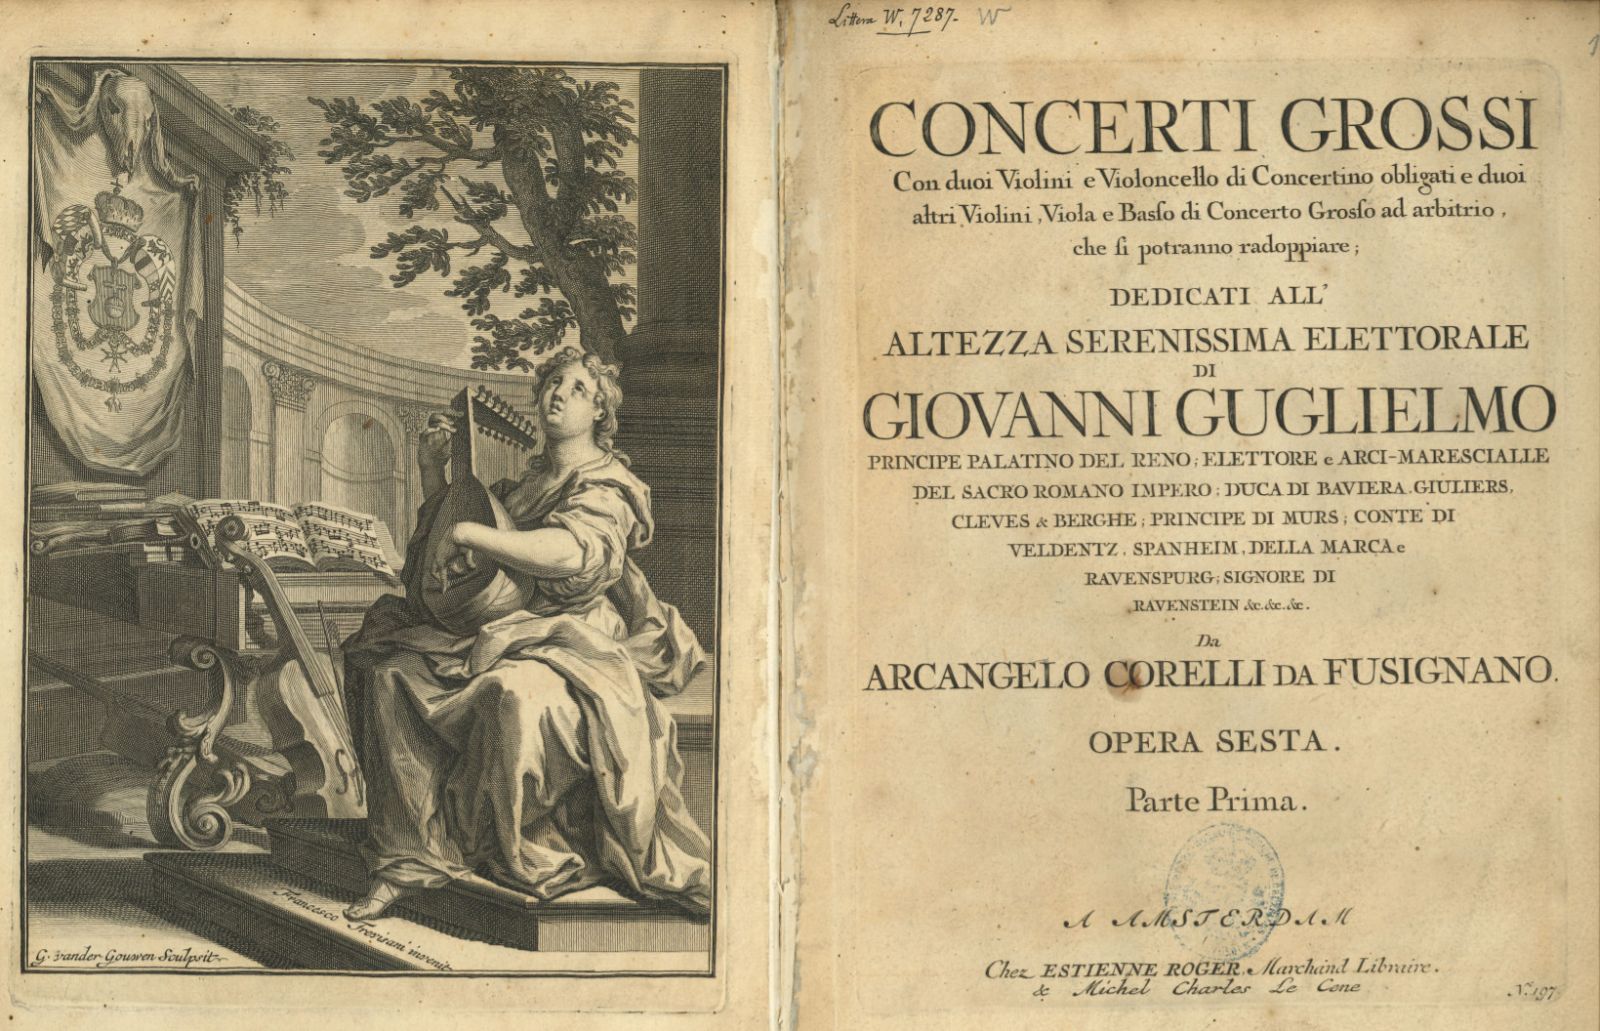 Concerti grossi, opus 6 van Arcangelo Corelli (1653-1713), uitgegeven door Roger en Le Cene in Amsterdam, ca. 1719. Enkel in de partij van de eerste viool is de frontispice afgedrukt. B-Bc 7287.